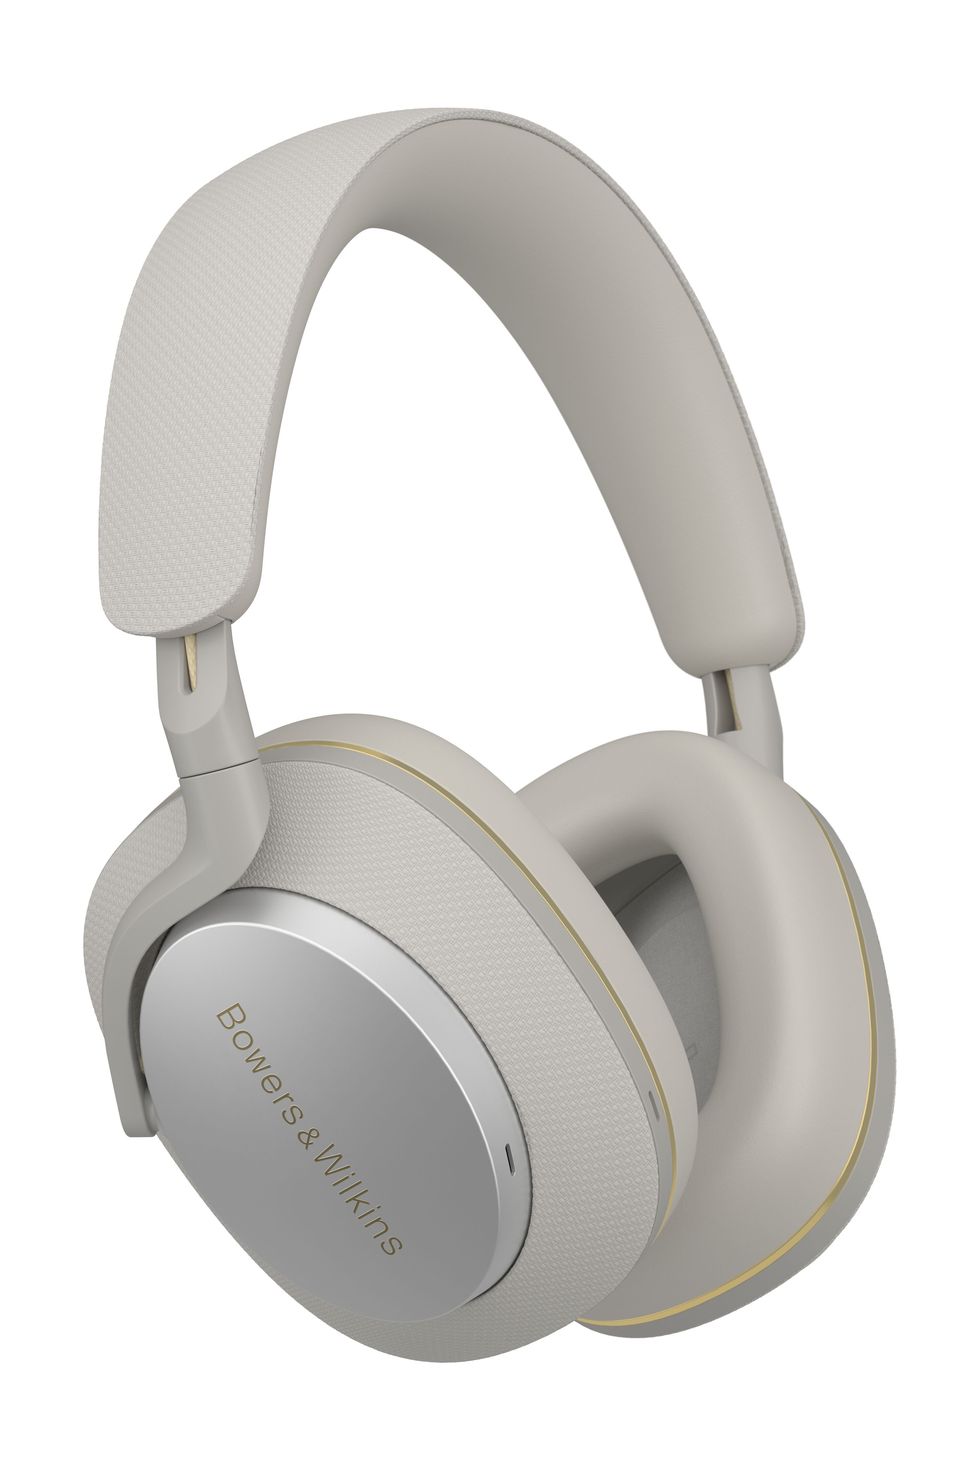 Px7 S2e white headphones